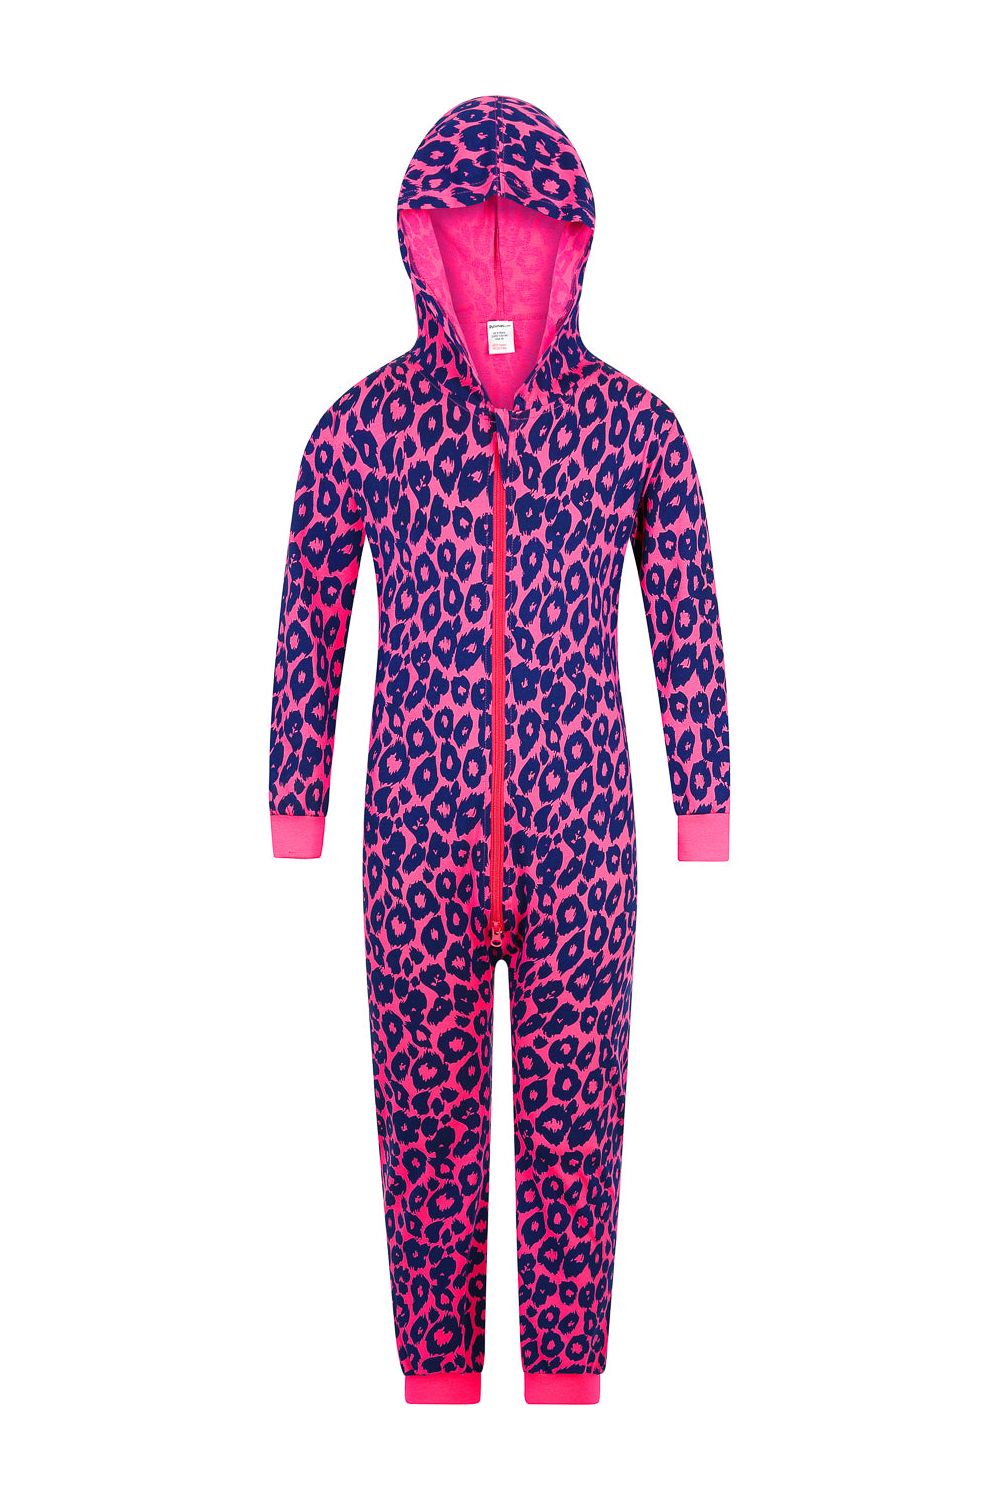 Girls Leopard Pink Onesie - Pyjamas.com